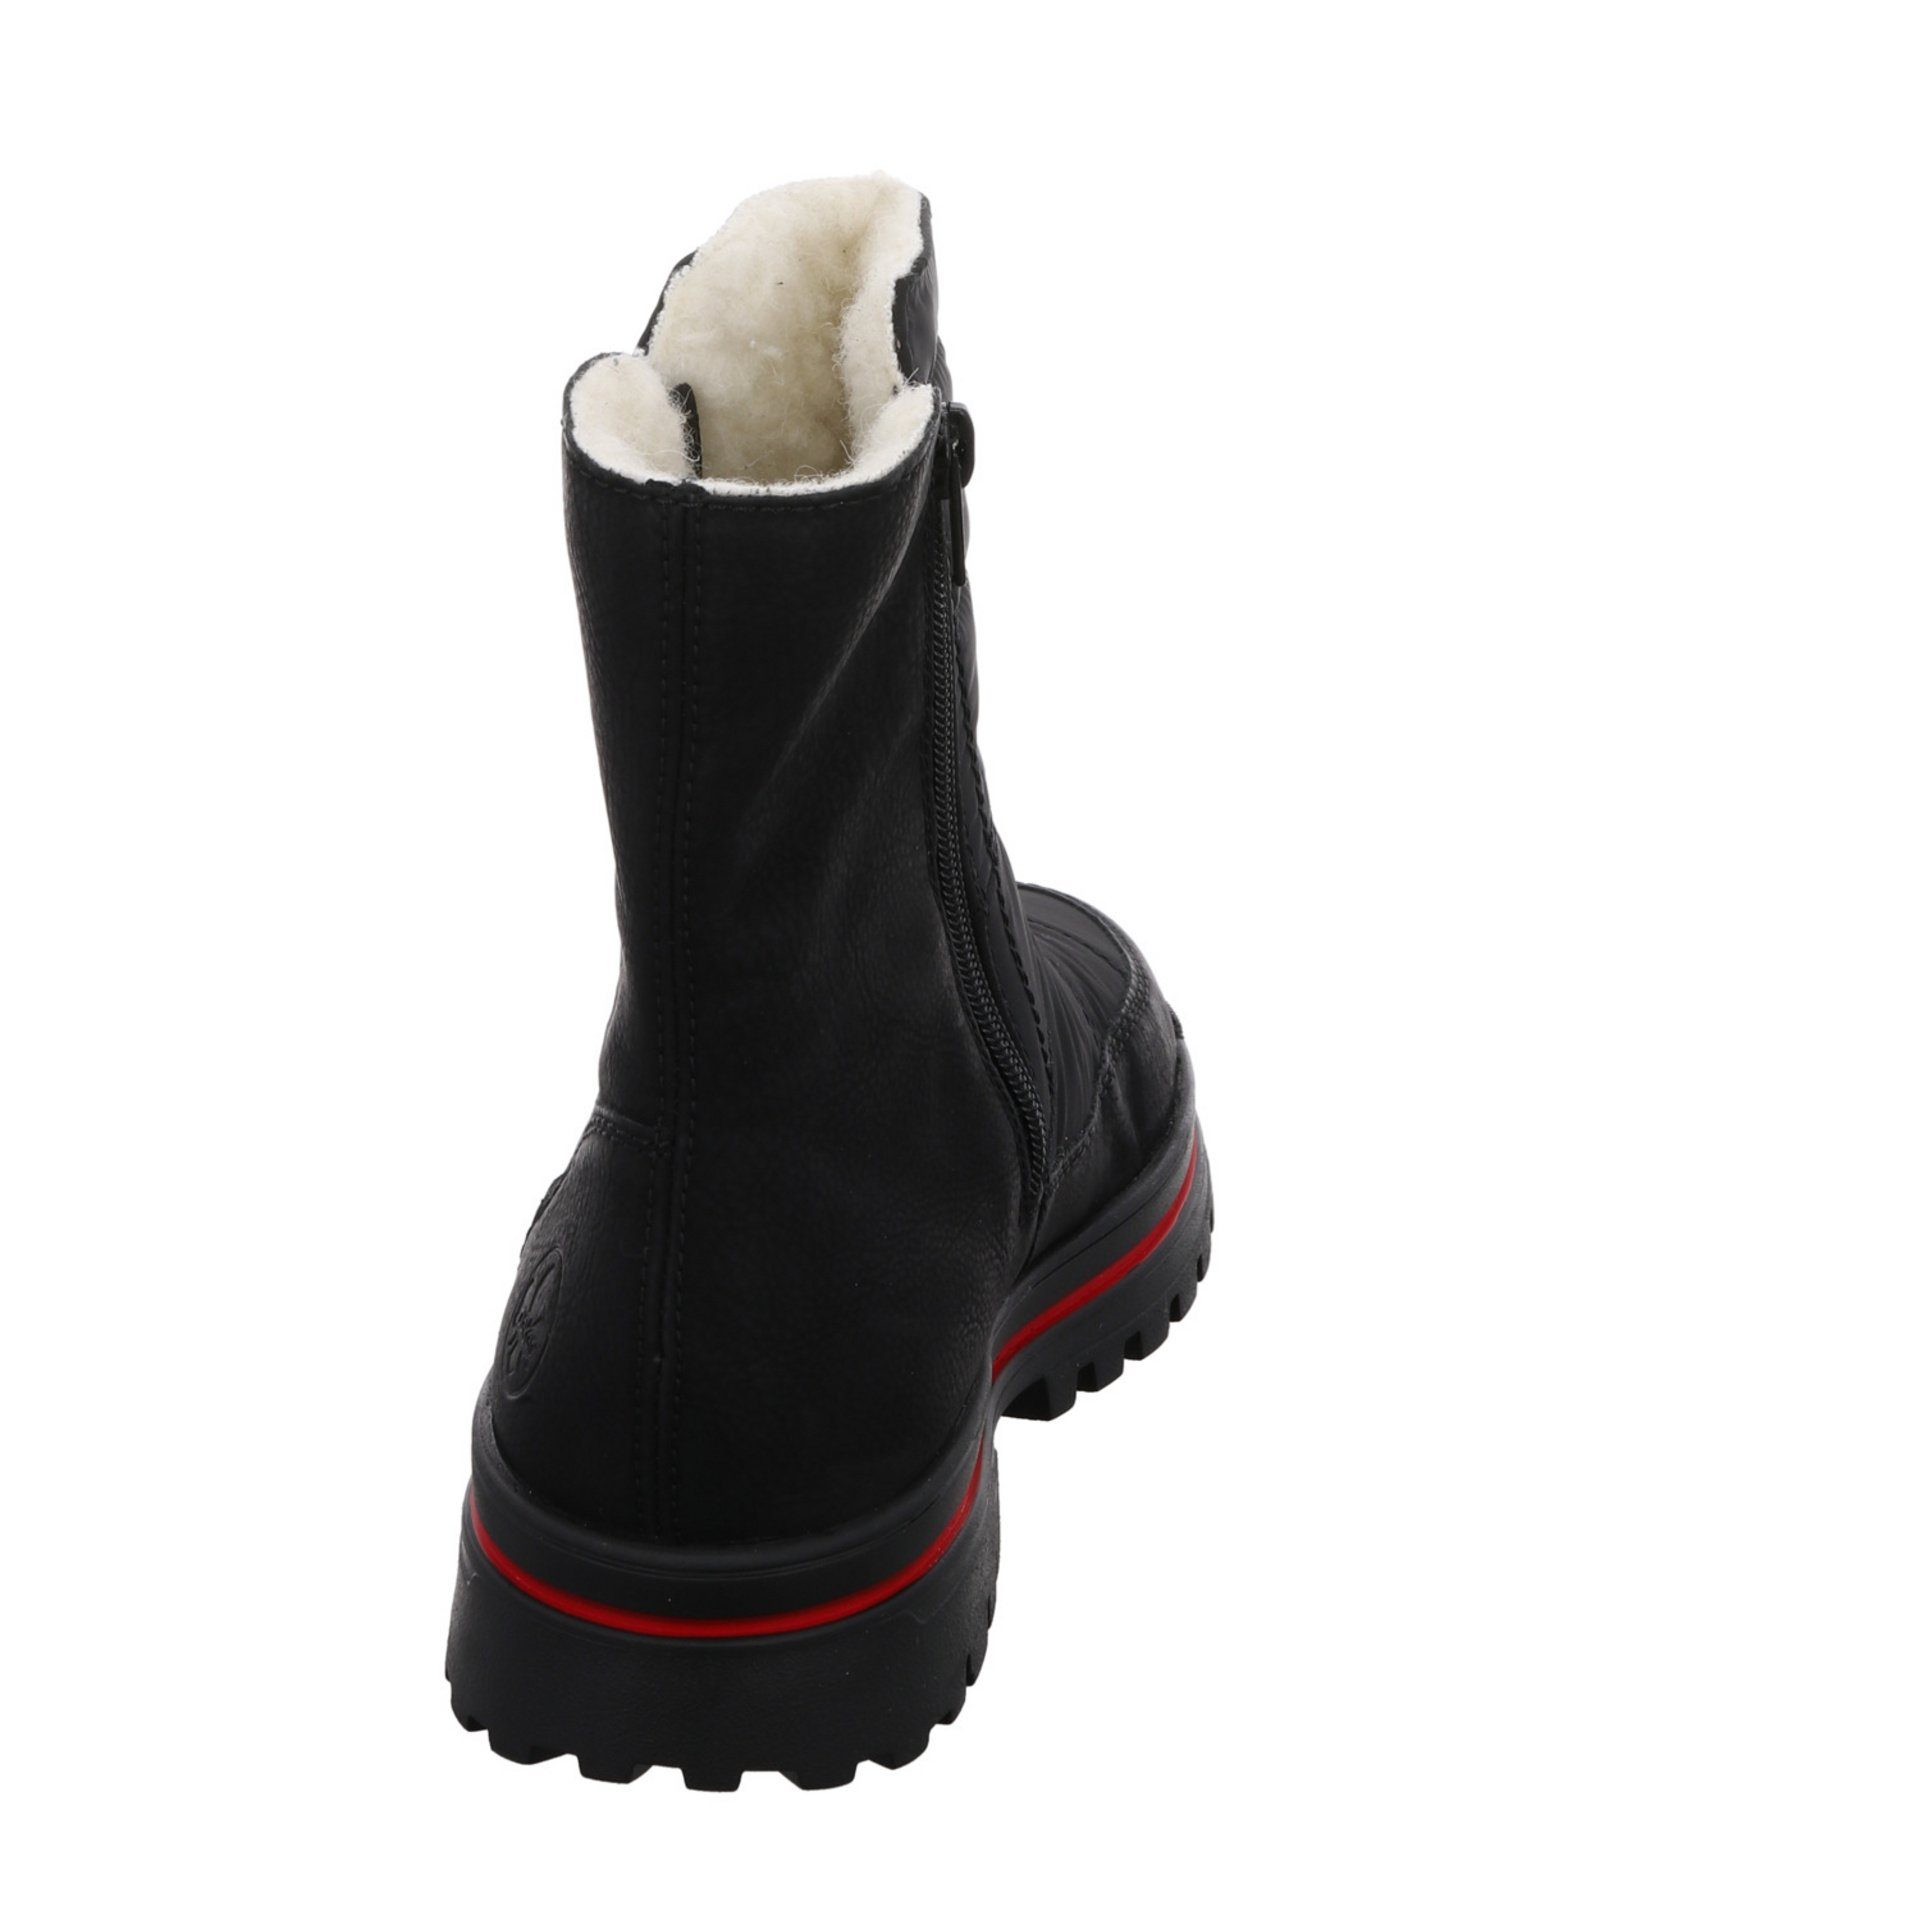 Synthetikkombination Damen Boots Schuhe Rieker Stiefel Elegant Stiefel Freizeit